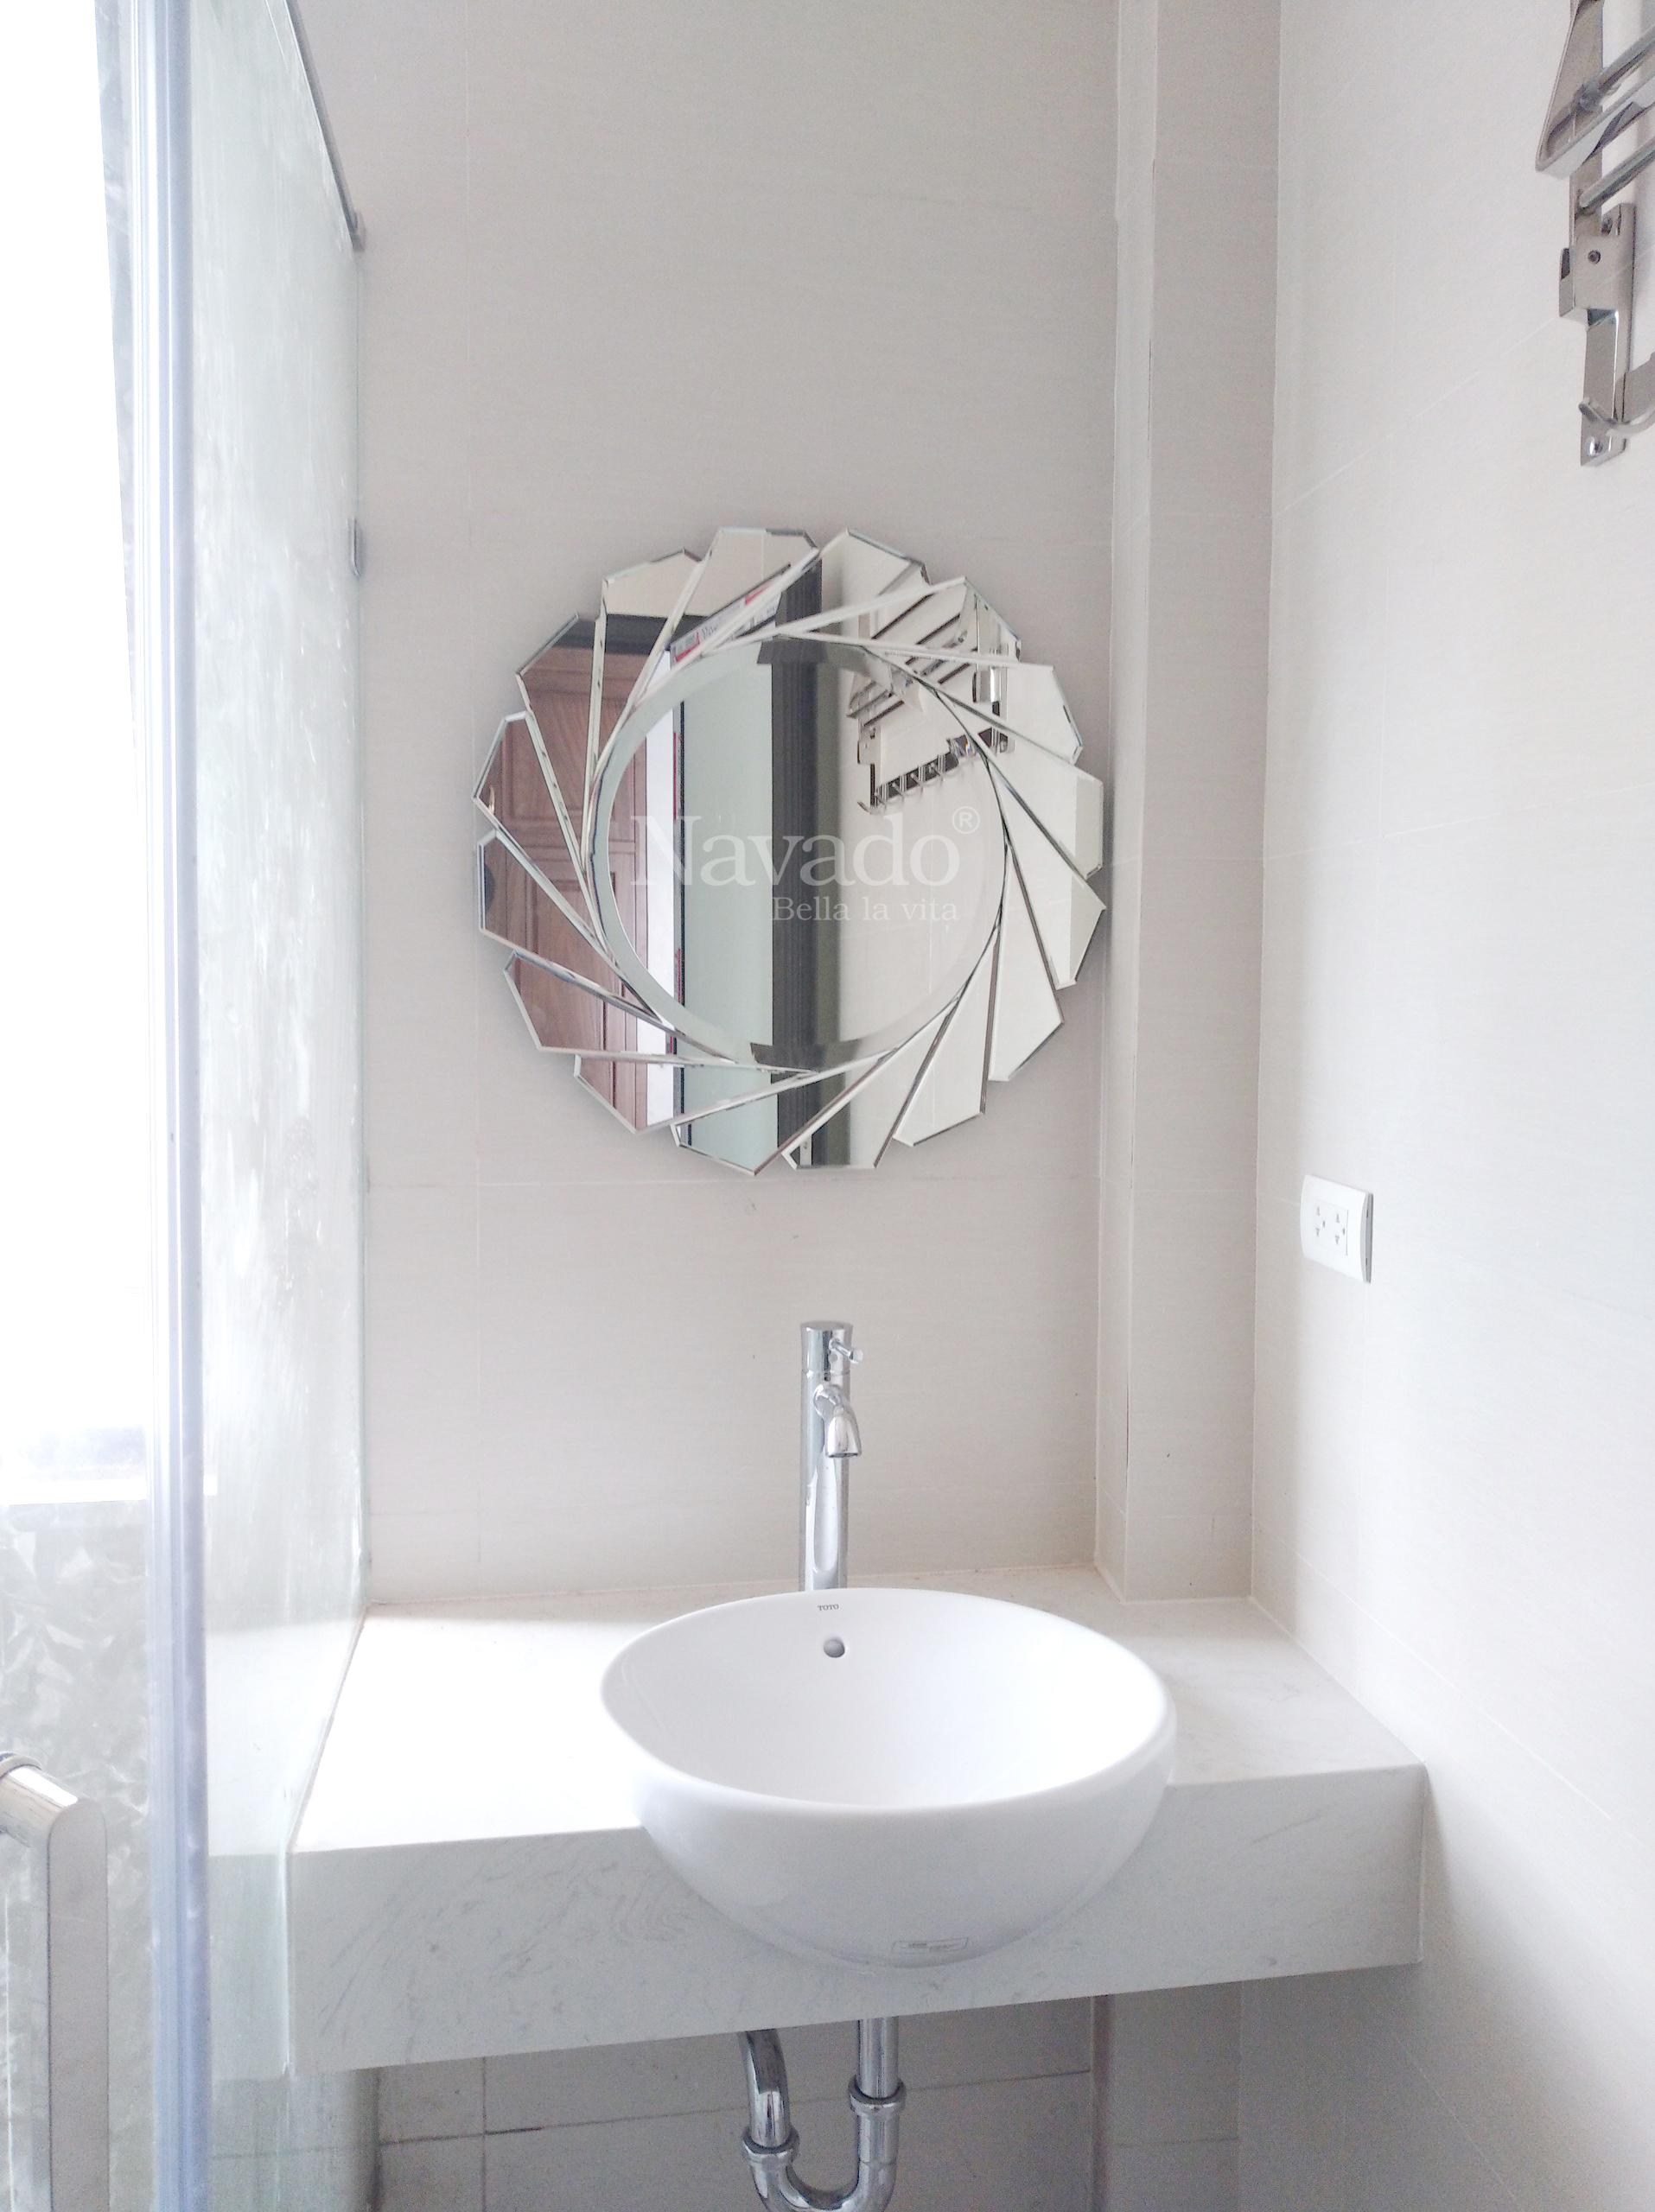 Gương nhà tắm nghệ thuật có đặc trưng là sự sáng tạo, tinh tế và đẳng cấp. Những mẫu gương nhà tắm này được chế tác bằng tay, tạo nên những chi tiết độc đáo và đẹp mắt. Hãy chiêm ngưỡng hình ảnh gương nhà tắm nghệ thuật để cảm nhận sự độc đáo và tinh tế trong sản phẩm này.